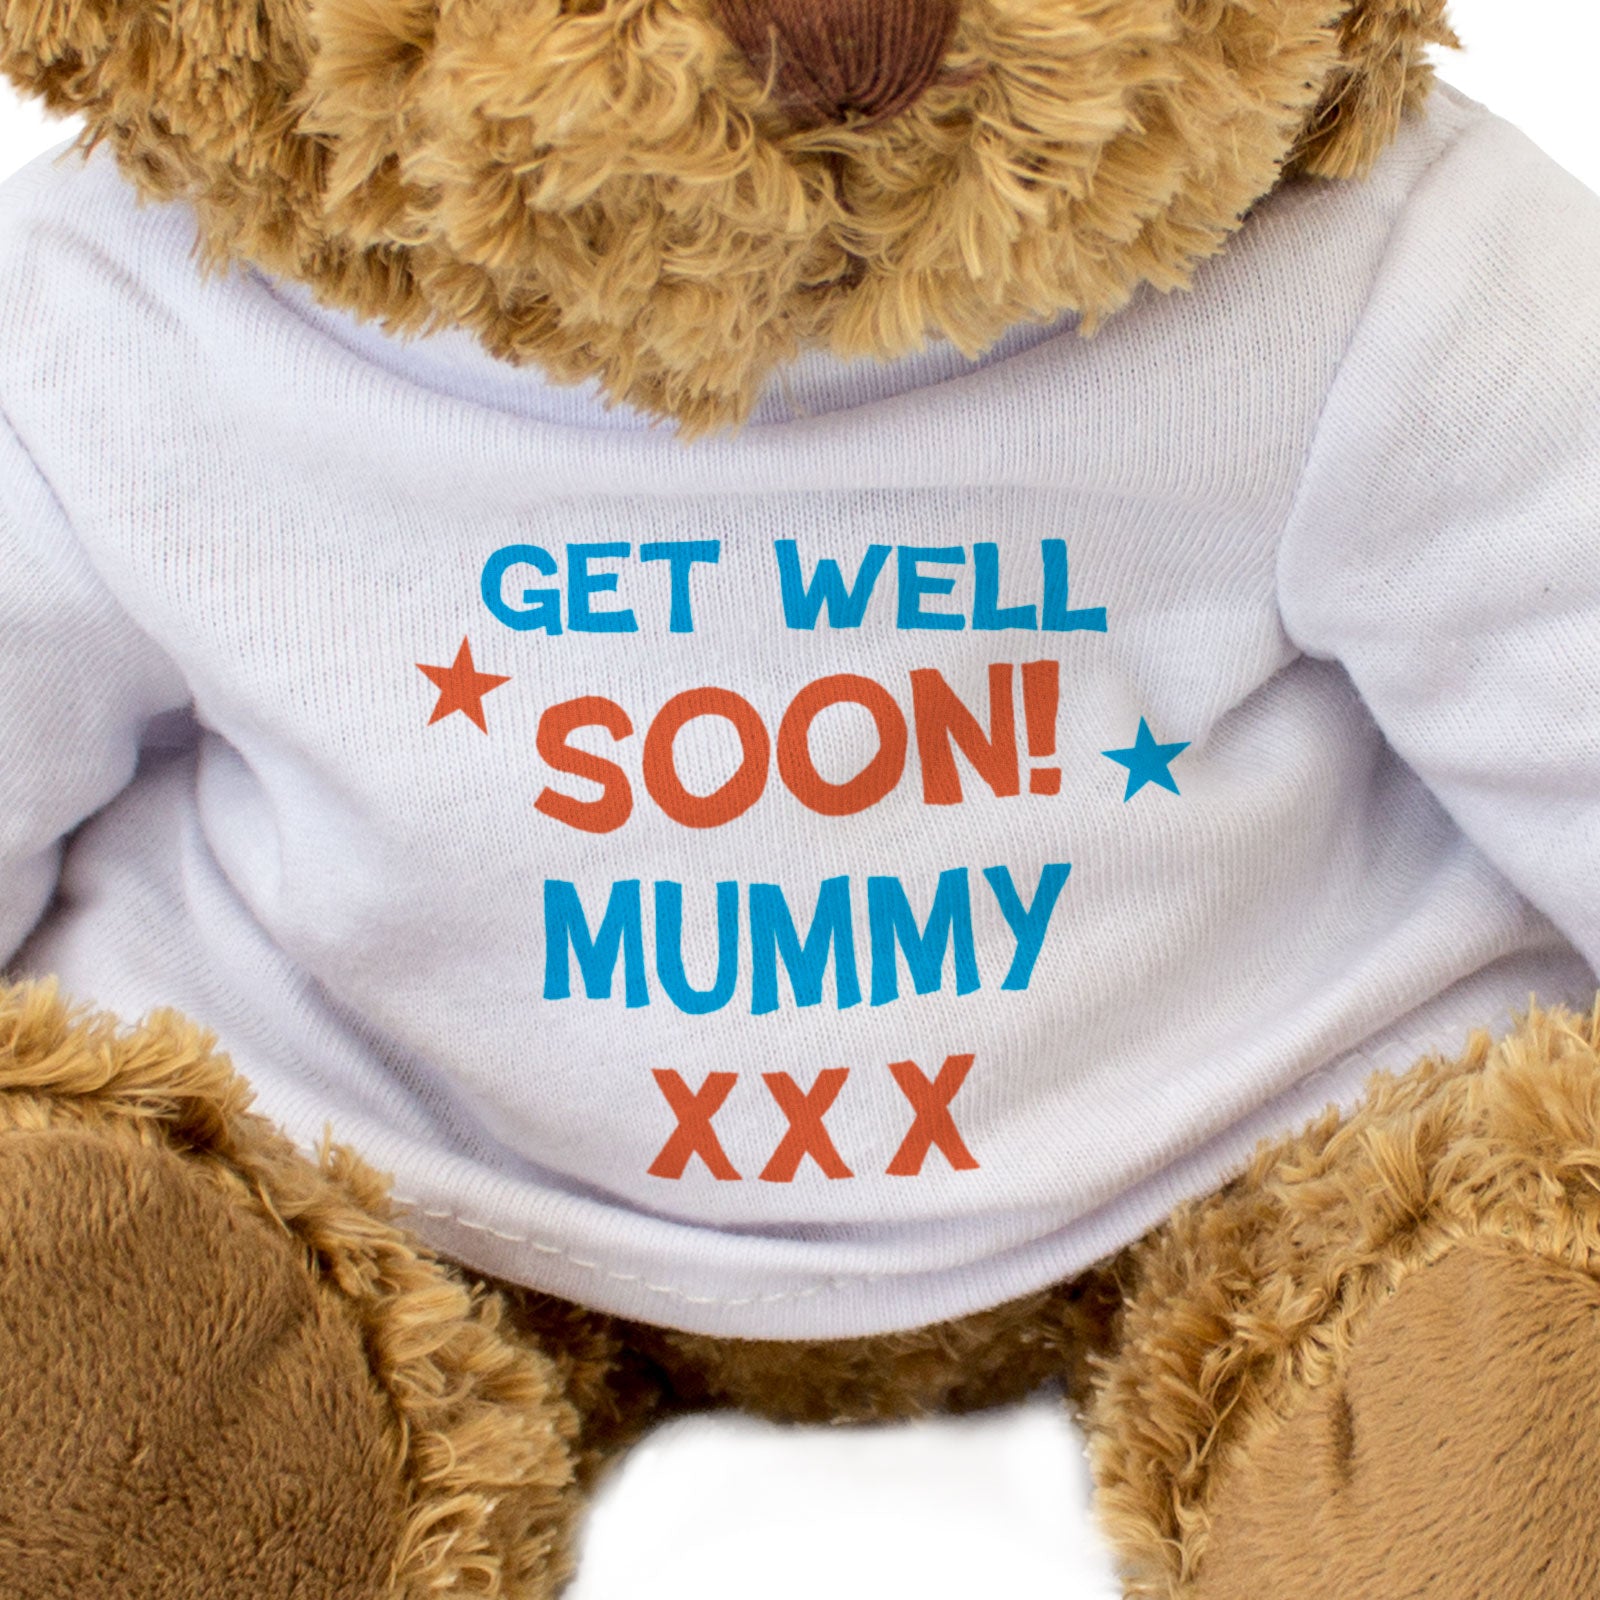 Get Well Soon Mummy - Teddy Bear